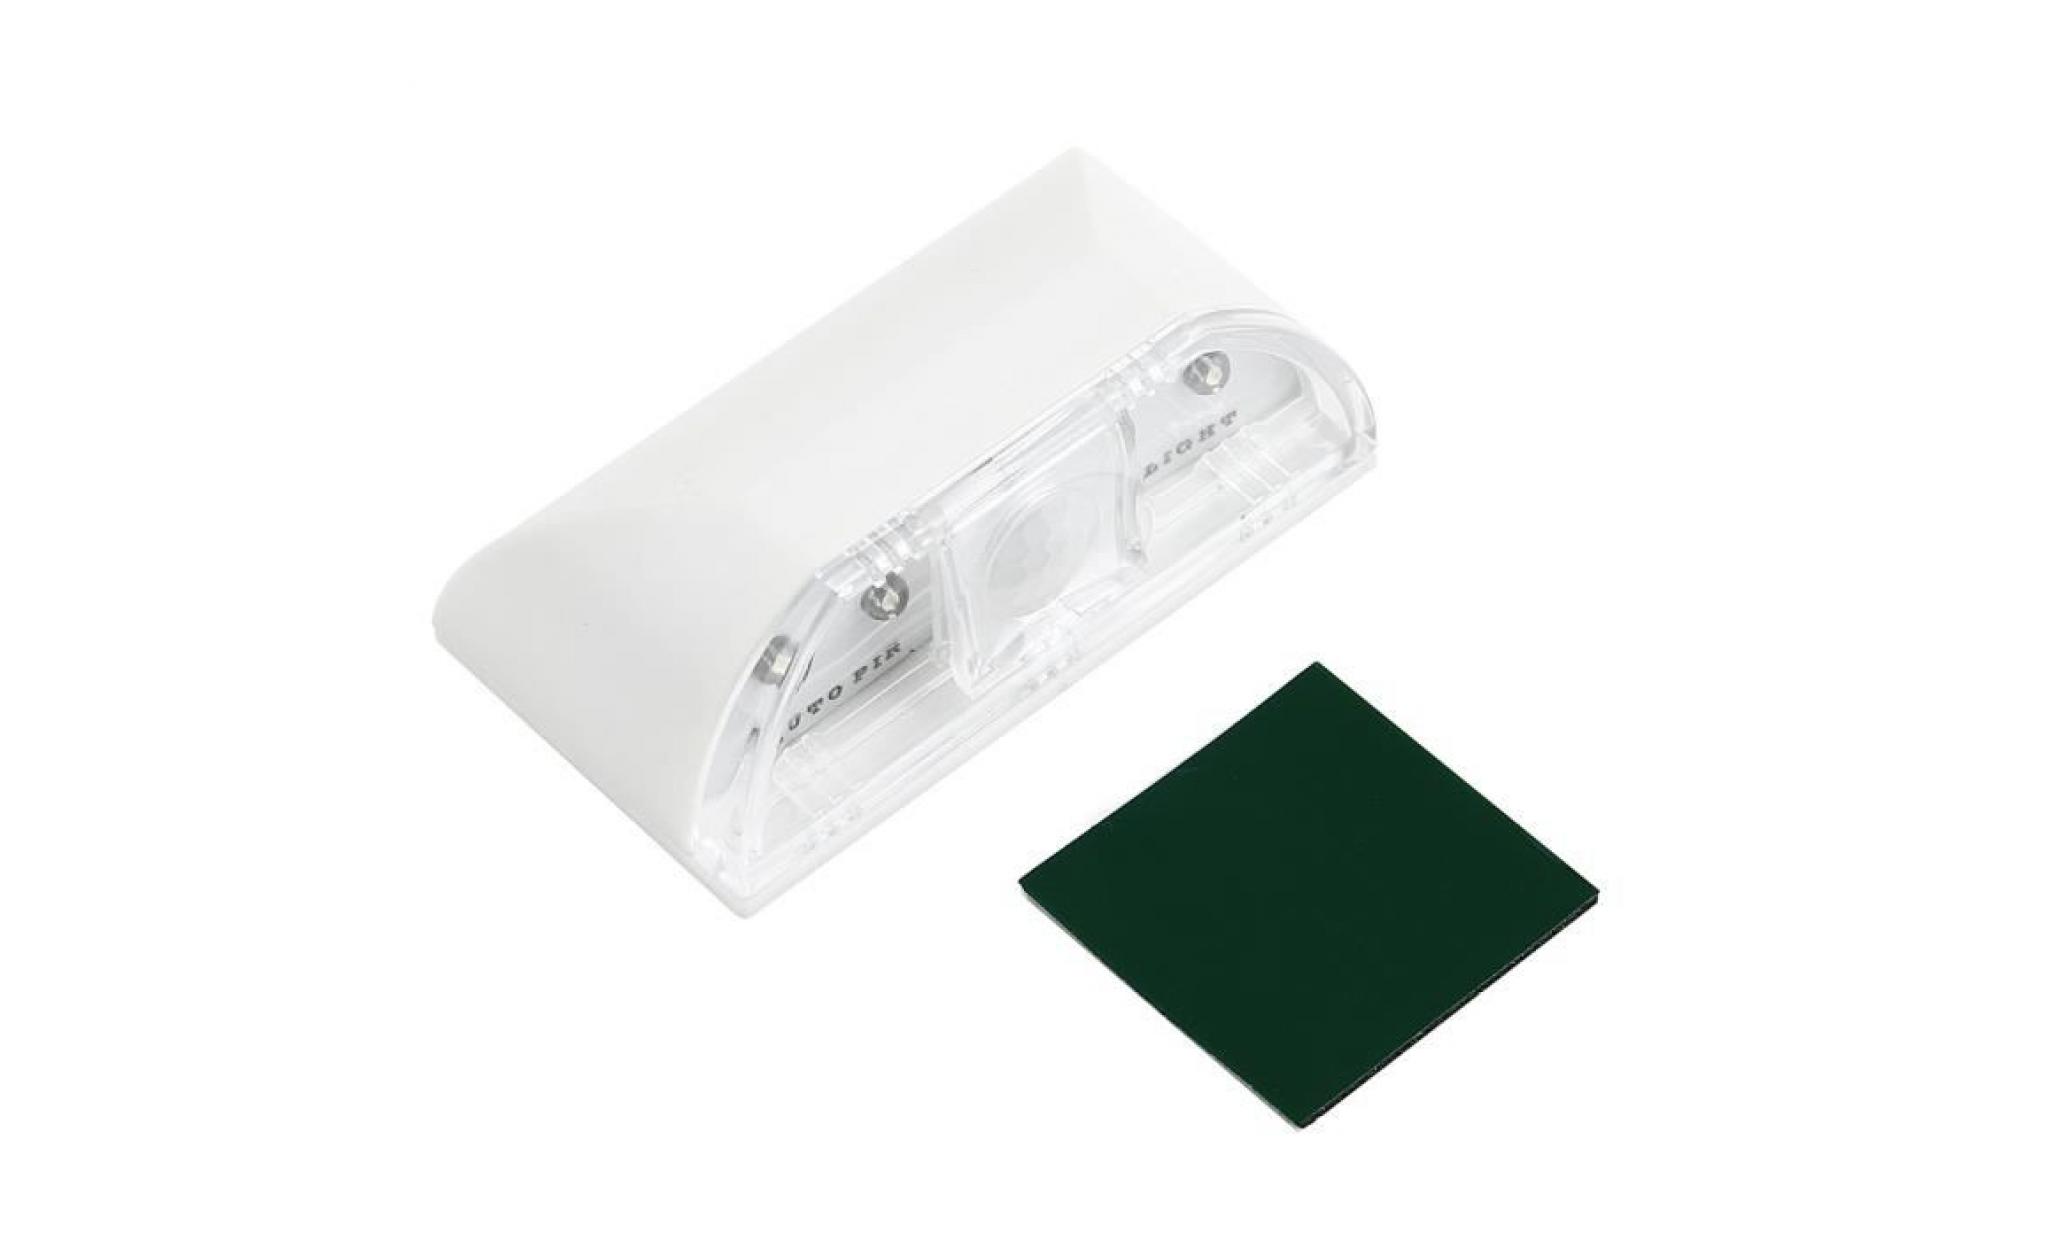 4 Perles LED PIR capteur de détection de mouvement infrarouge Accueil Stairway Lampe